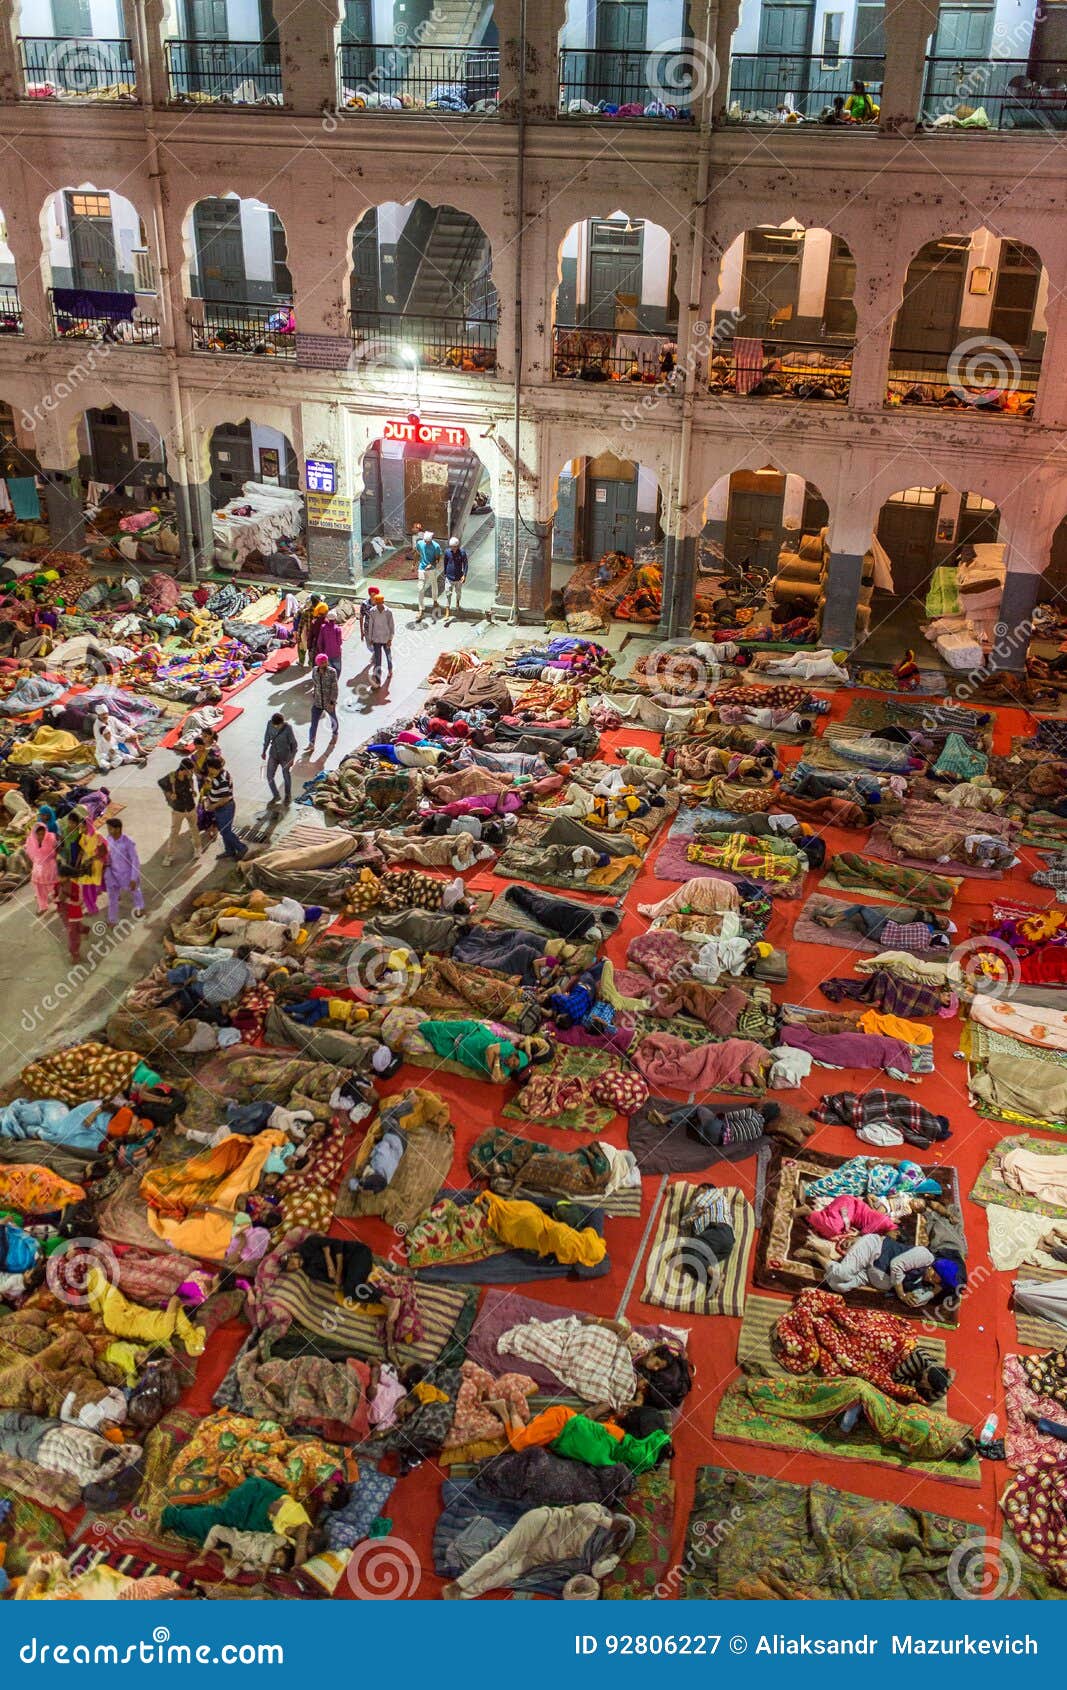 India Poor People Sleeping Floor Stock Photos Download 36